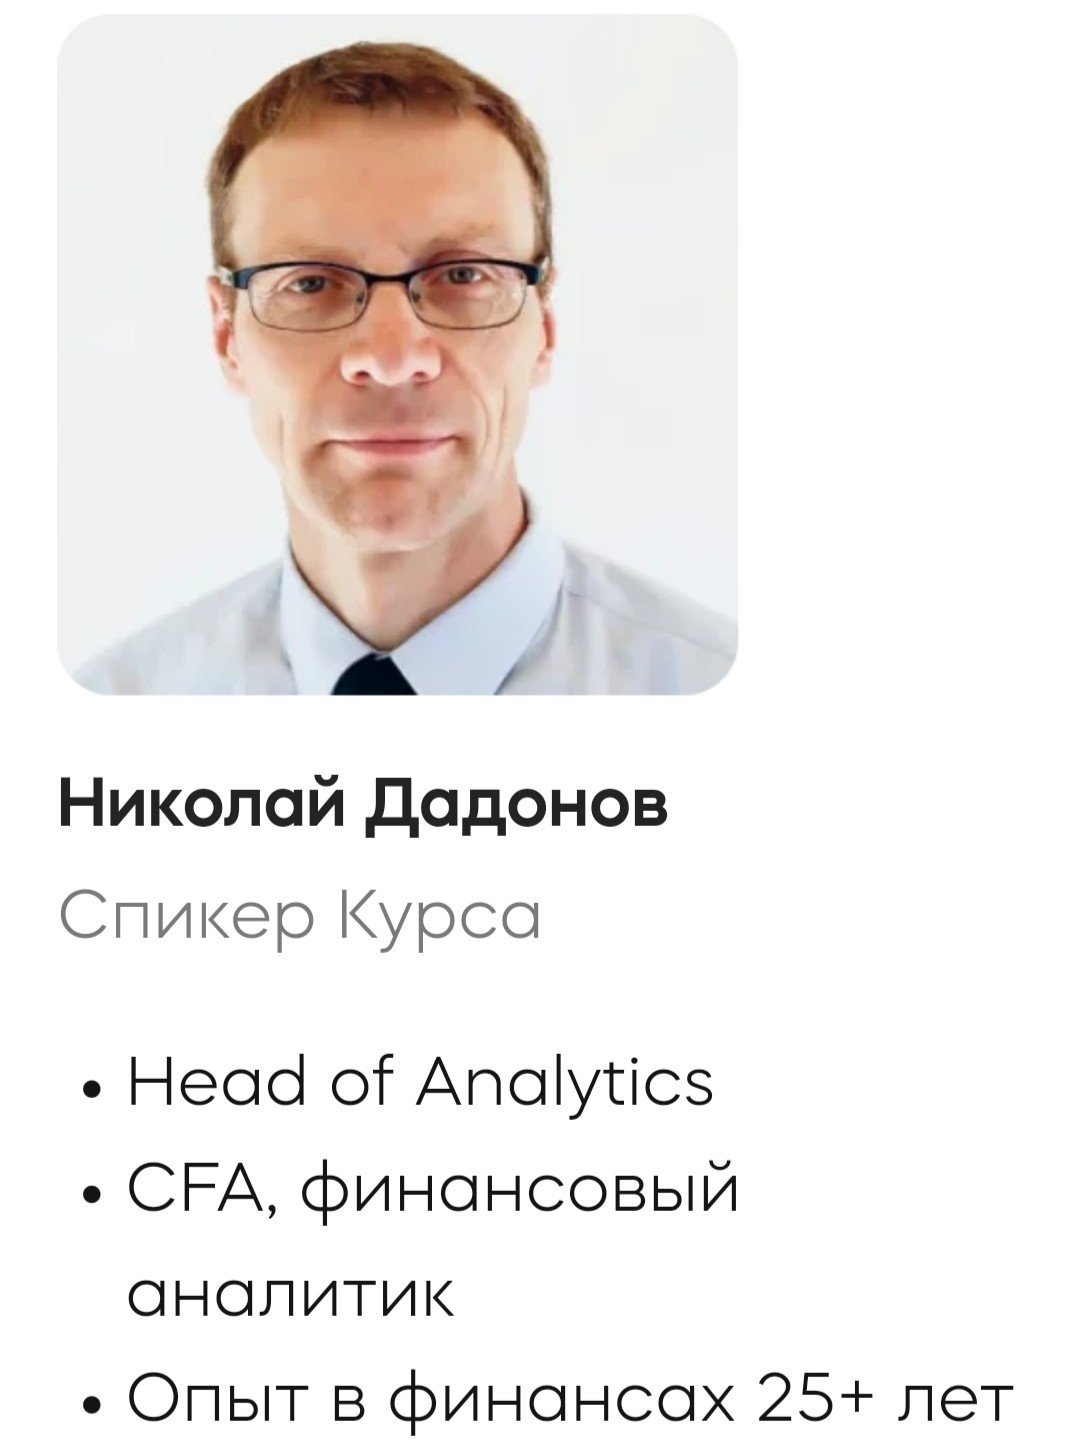 Николай Додонов финансовый аналитик